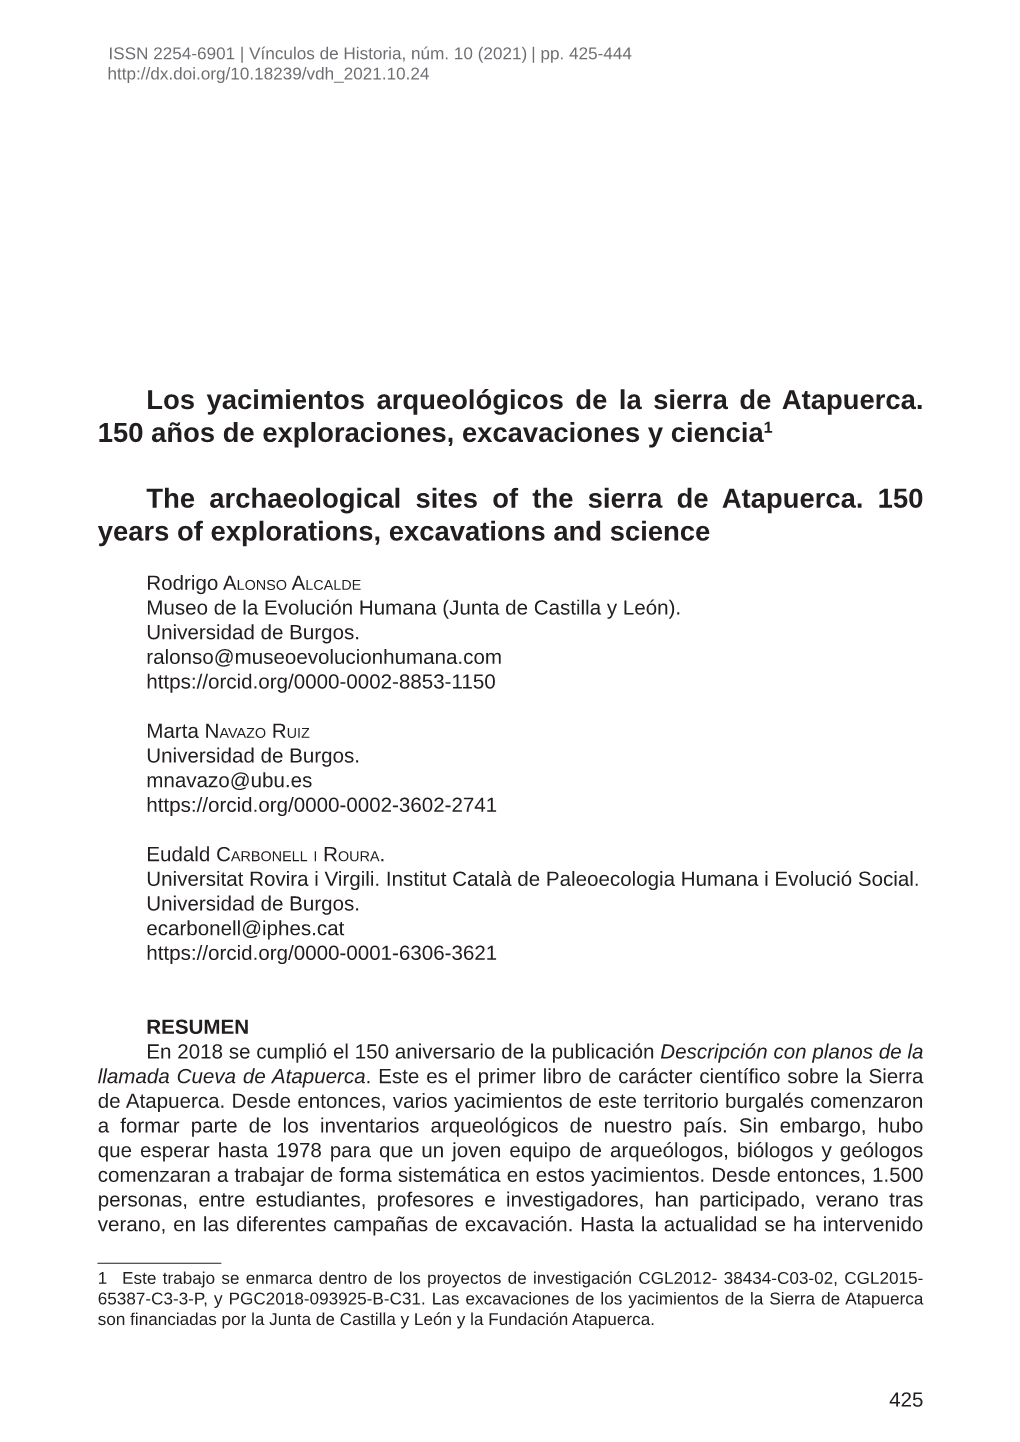 Los Yacimientos Arqueológicos De La Sierra De Atapuerca. 150 Años De Exploraciones, Excavaciones Y Ciencia1